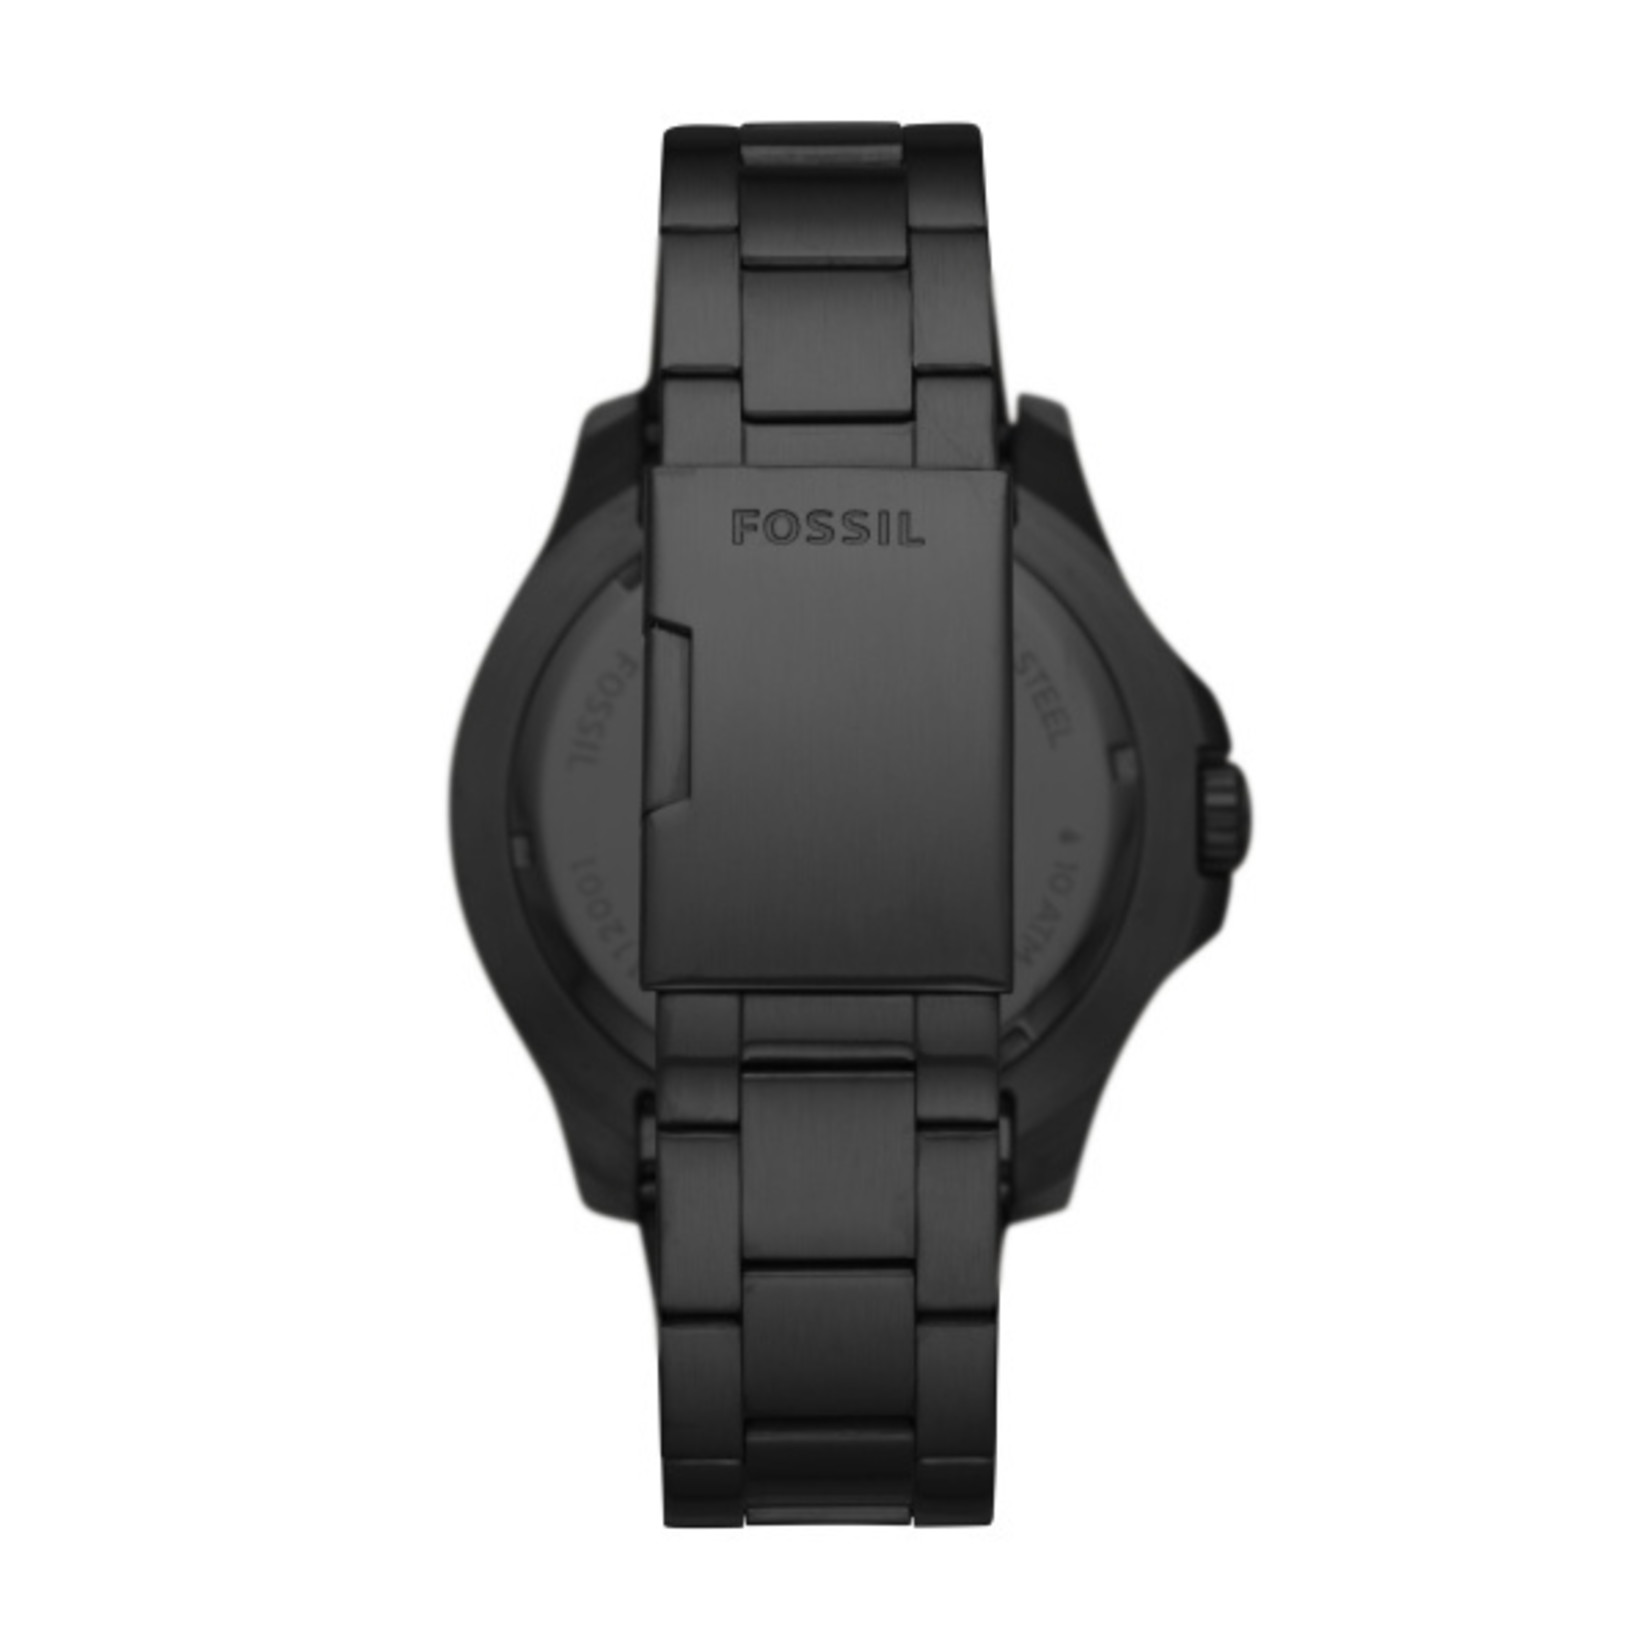 Fossil fs5688